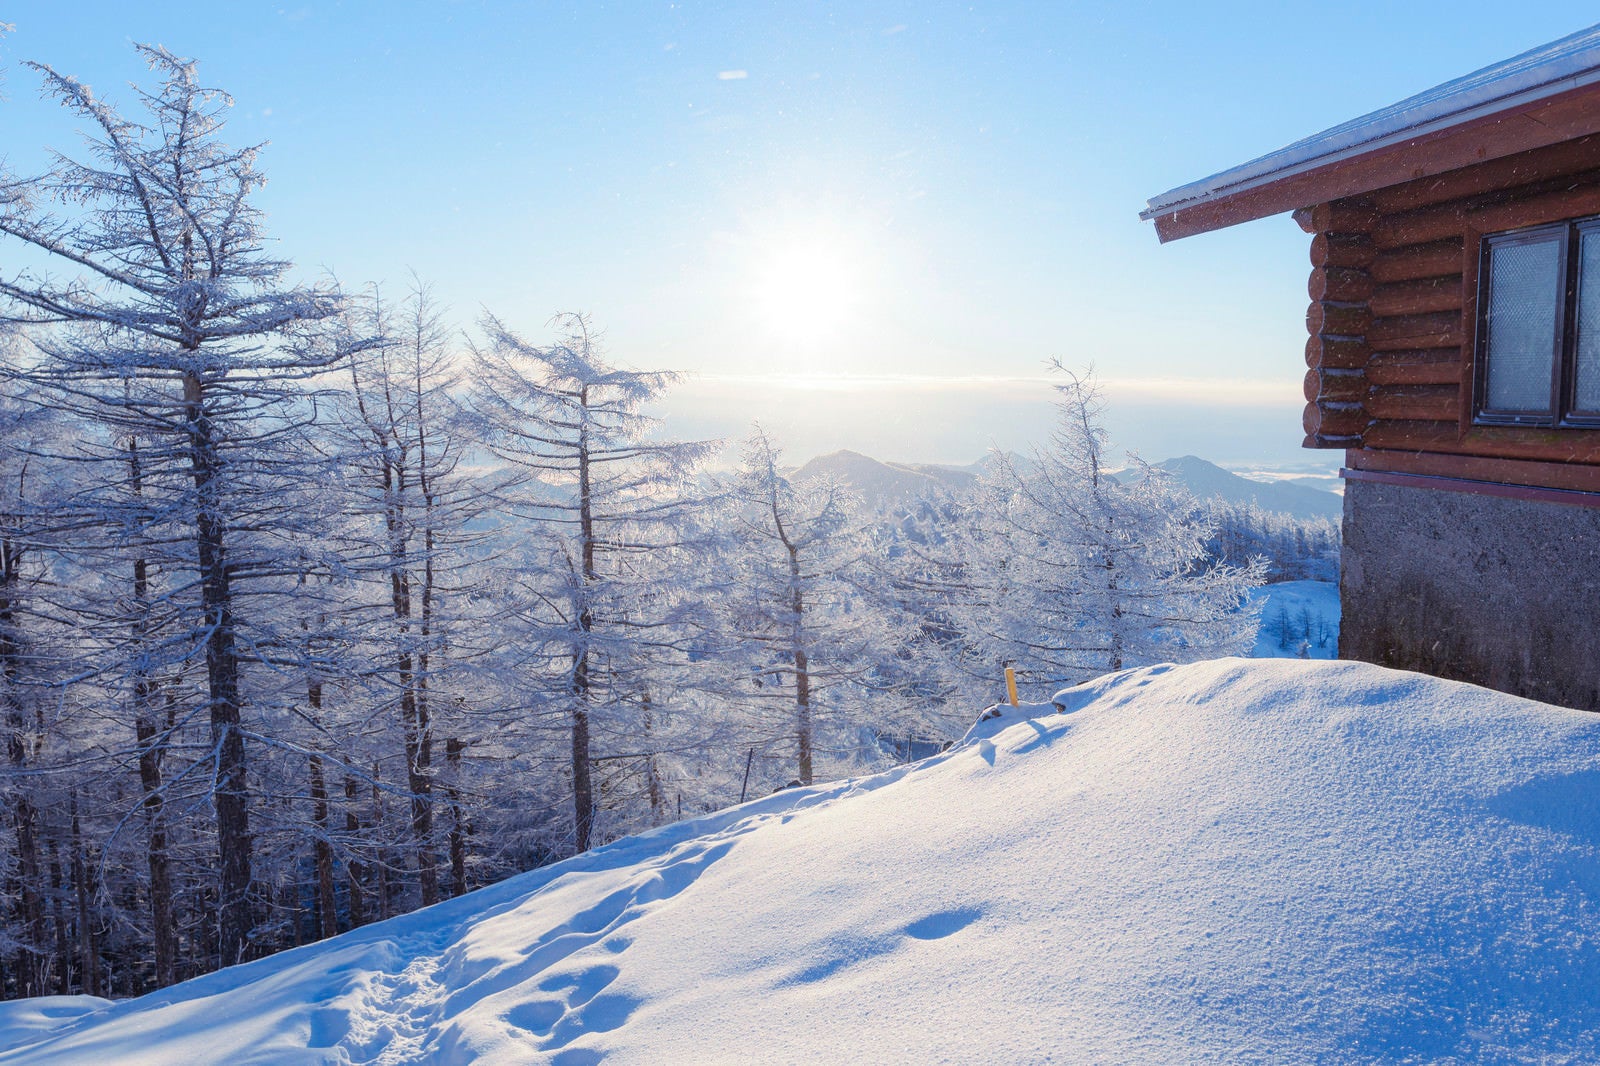 「雲取山避難小屋と霧氷」の写真